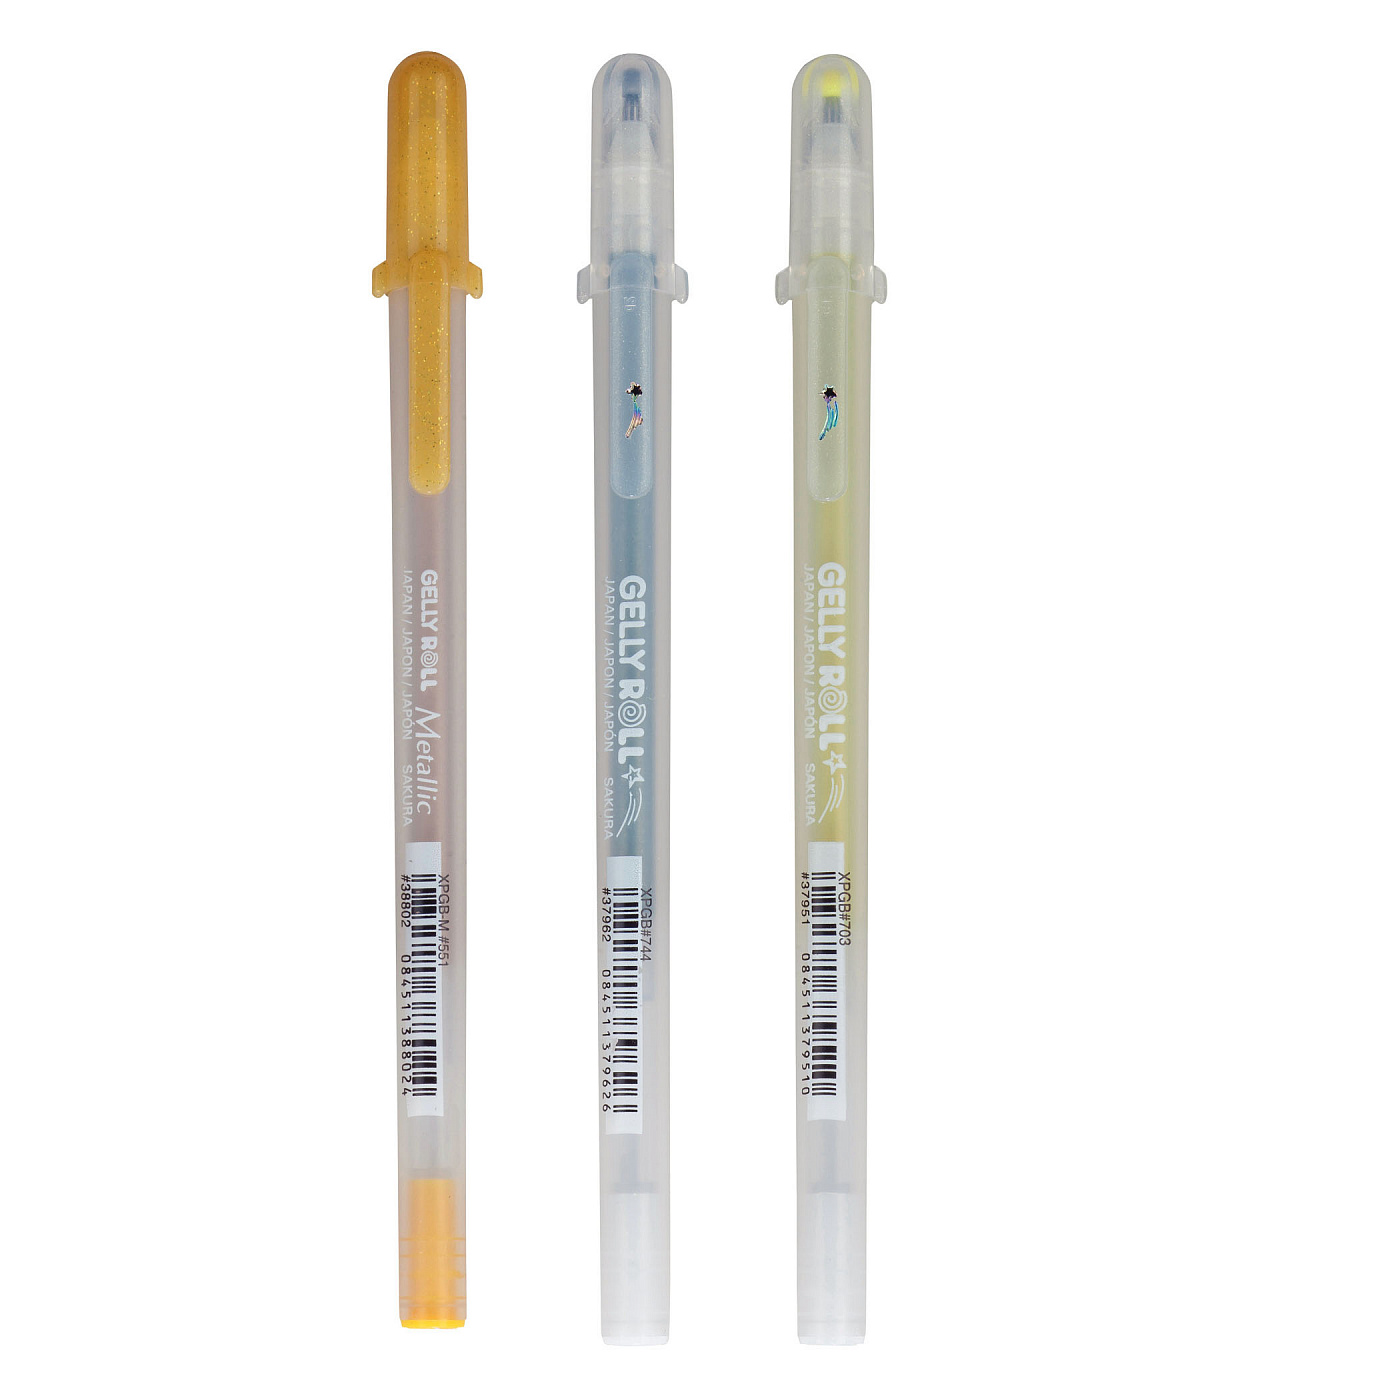 Ручка гелевая Gelly Roll, разные цвета ручки гелевые синие 06шт sense magic стираемые 0 6мм к к hatber